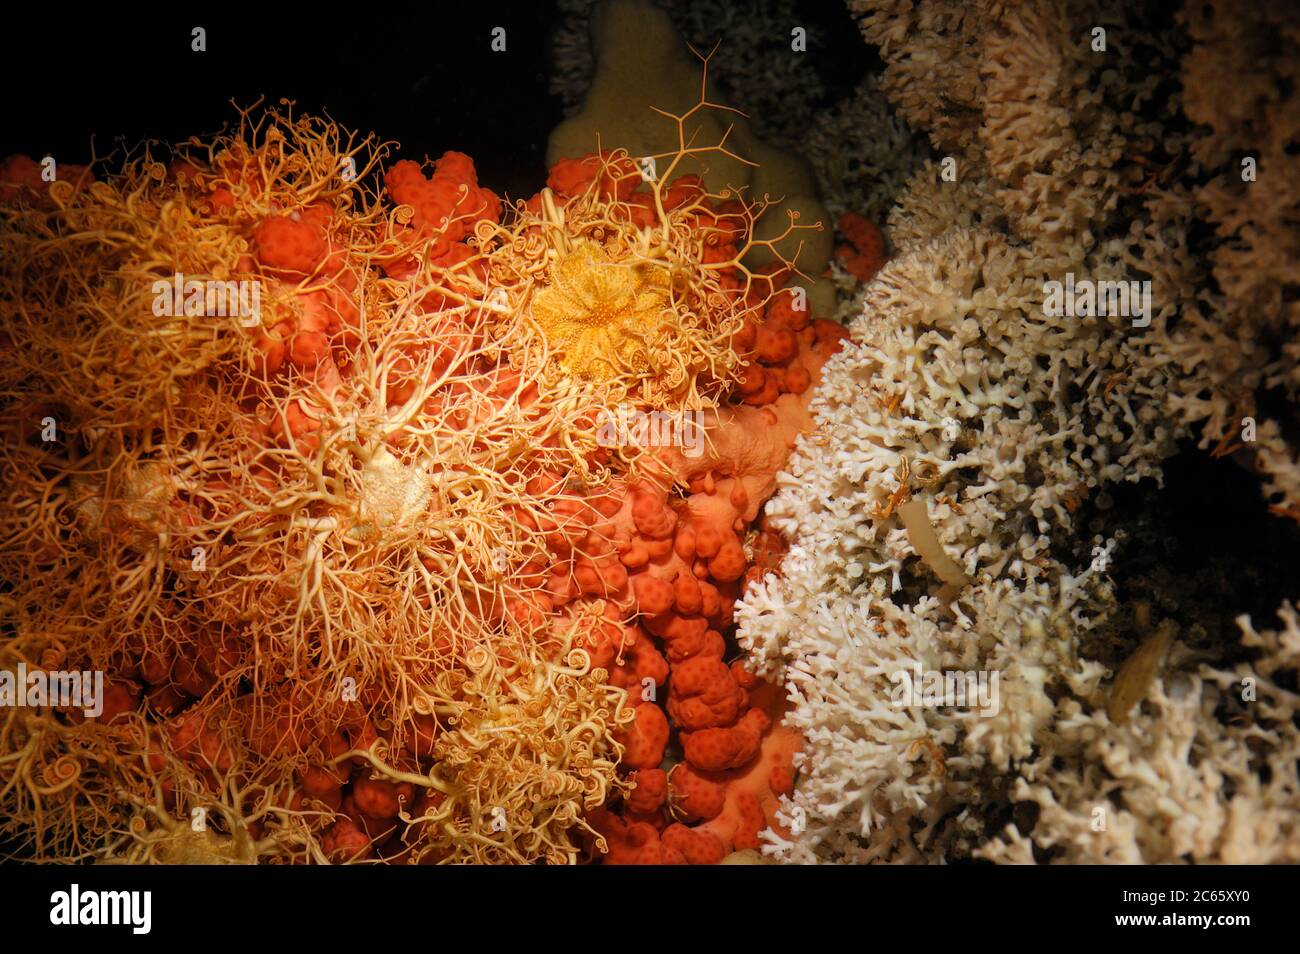 Coral bubblegum (Paragorgia arborea) con estrella de la canasta (Gorgonocephalus caputmedusae) con en el arrecife vivo de Lophelia pertusa en Trondheimfjord, Océano Atlántico Norte, Noruega Foto de stock